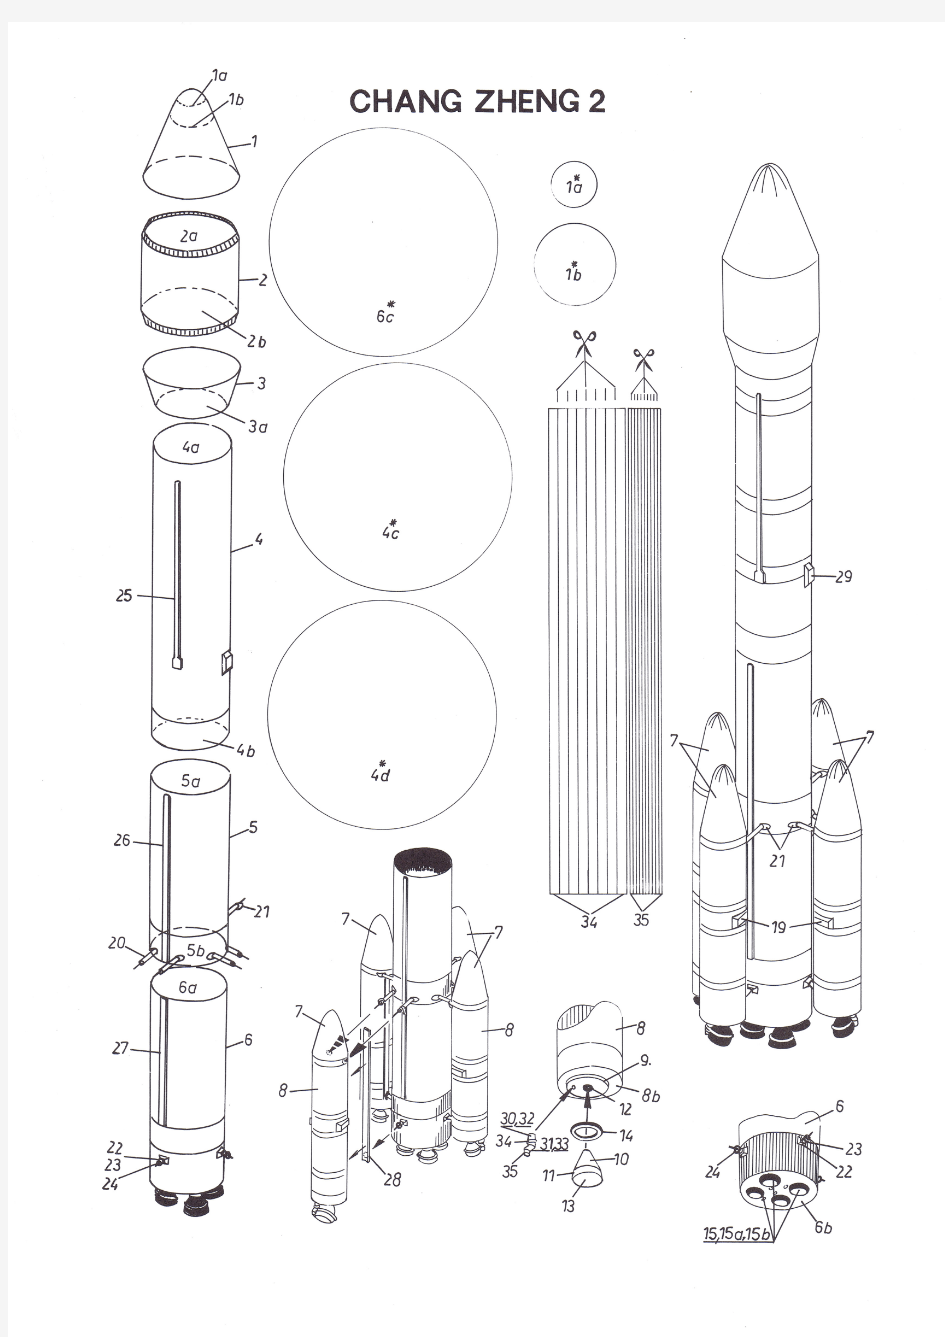 中国长征3号运载火箭纸模型图纸